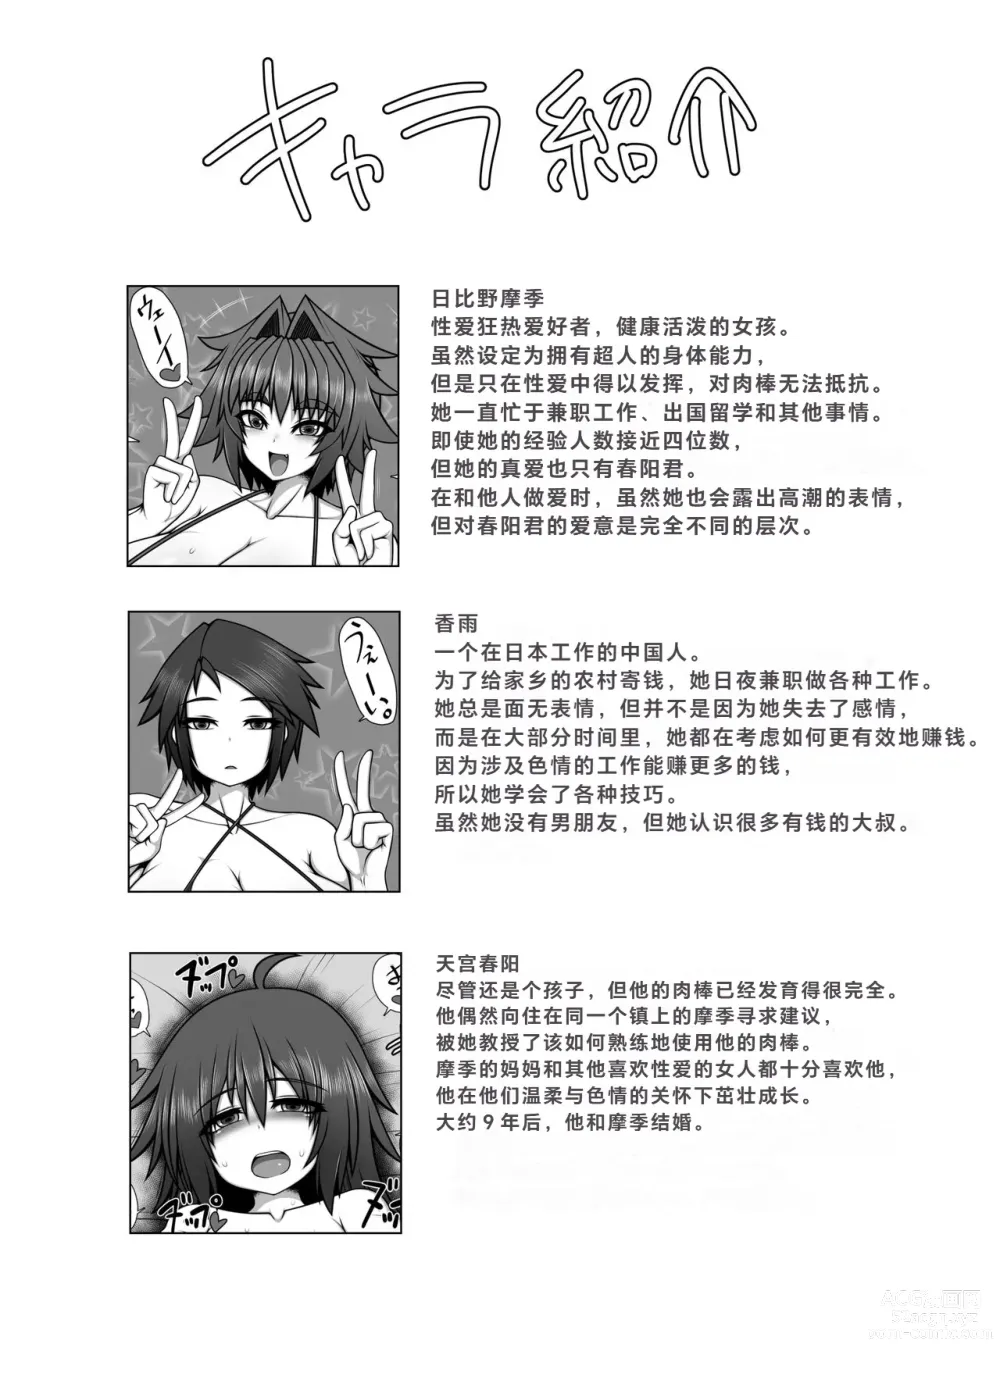 Page 33 of doujinshi Uchi no Futari, 2.